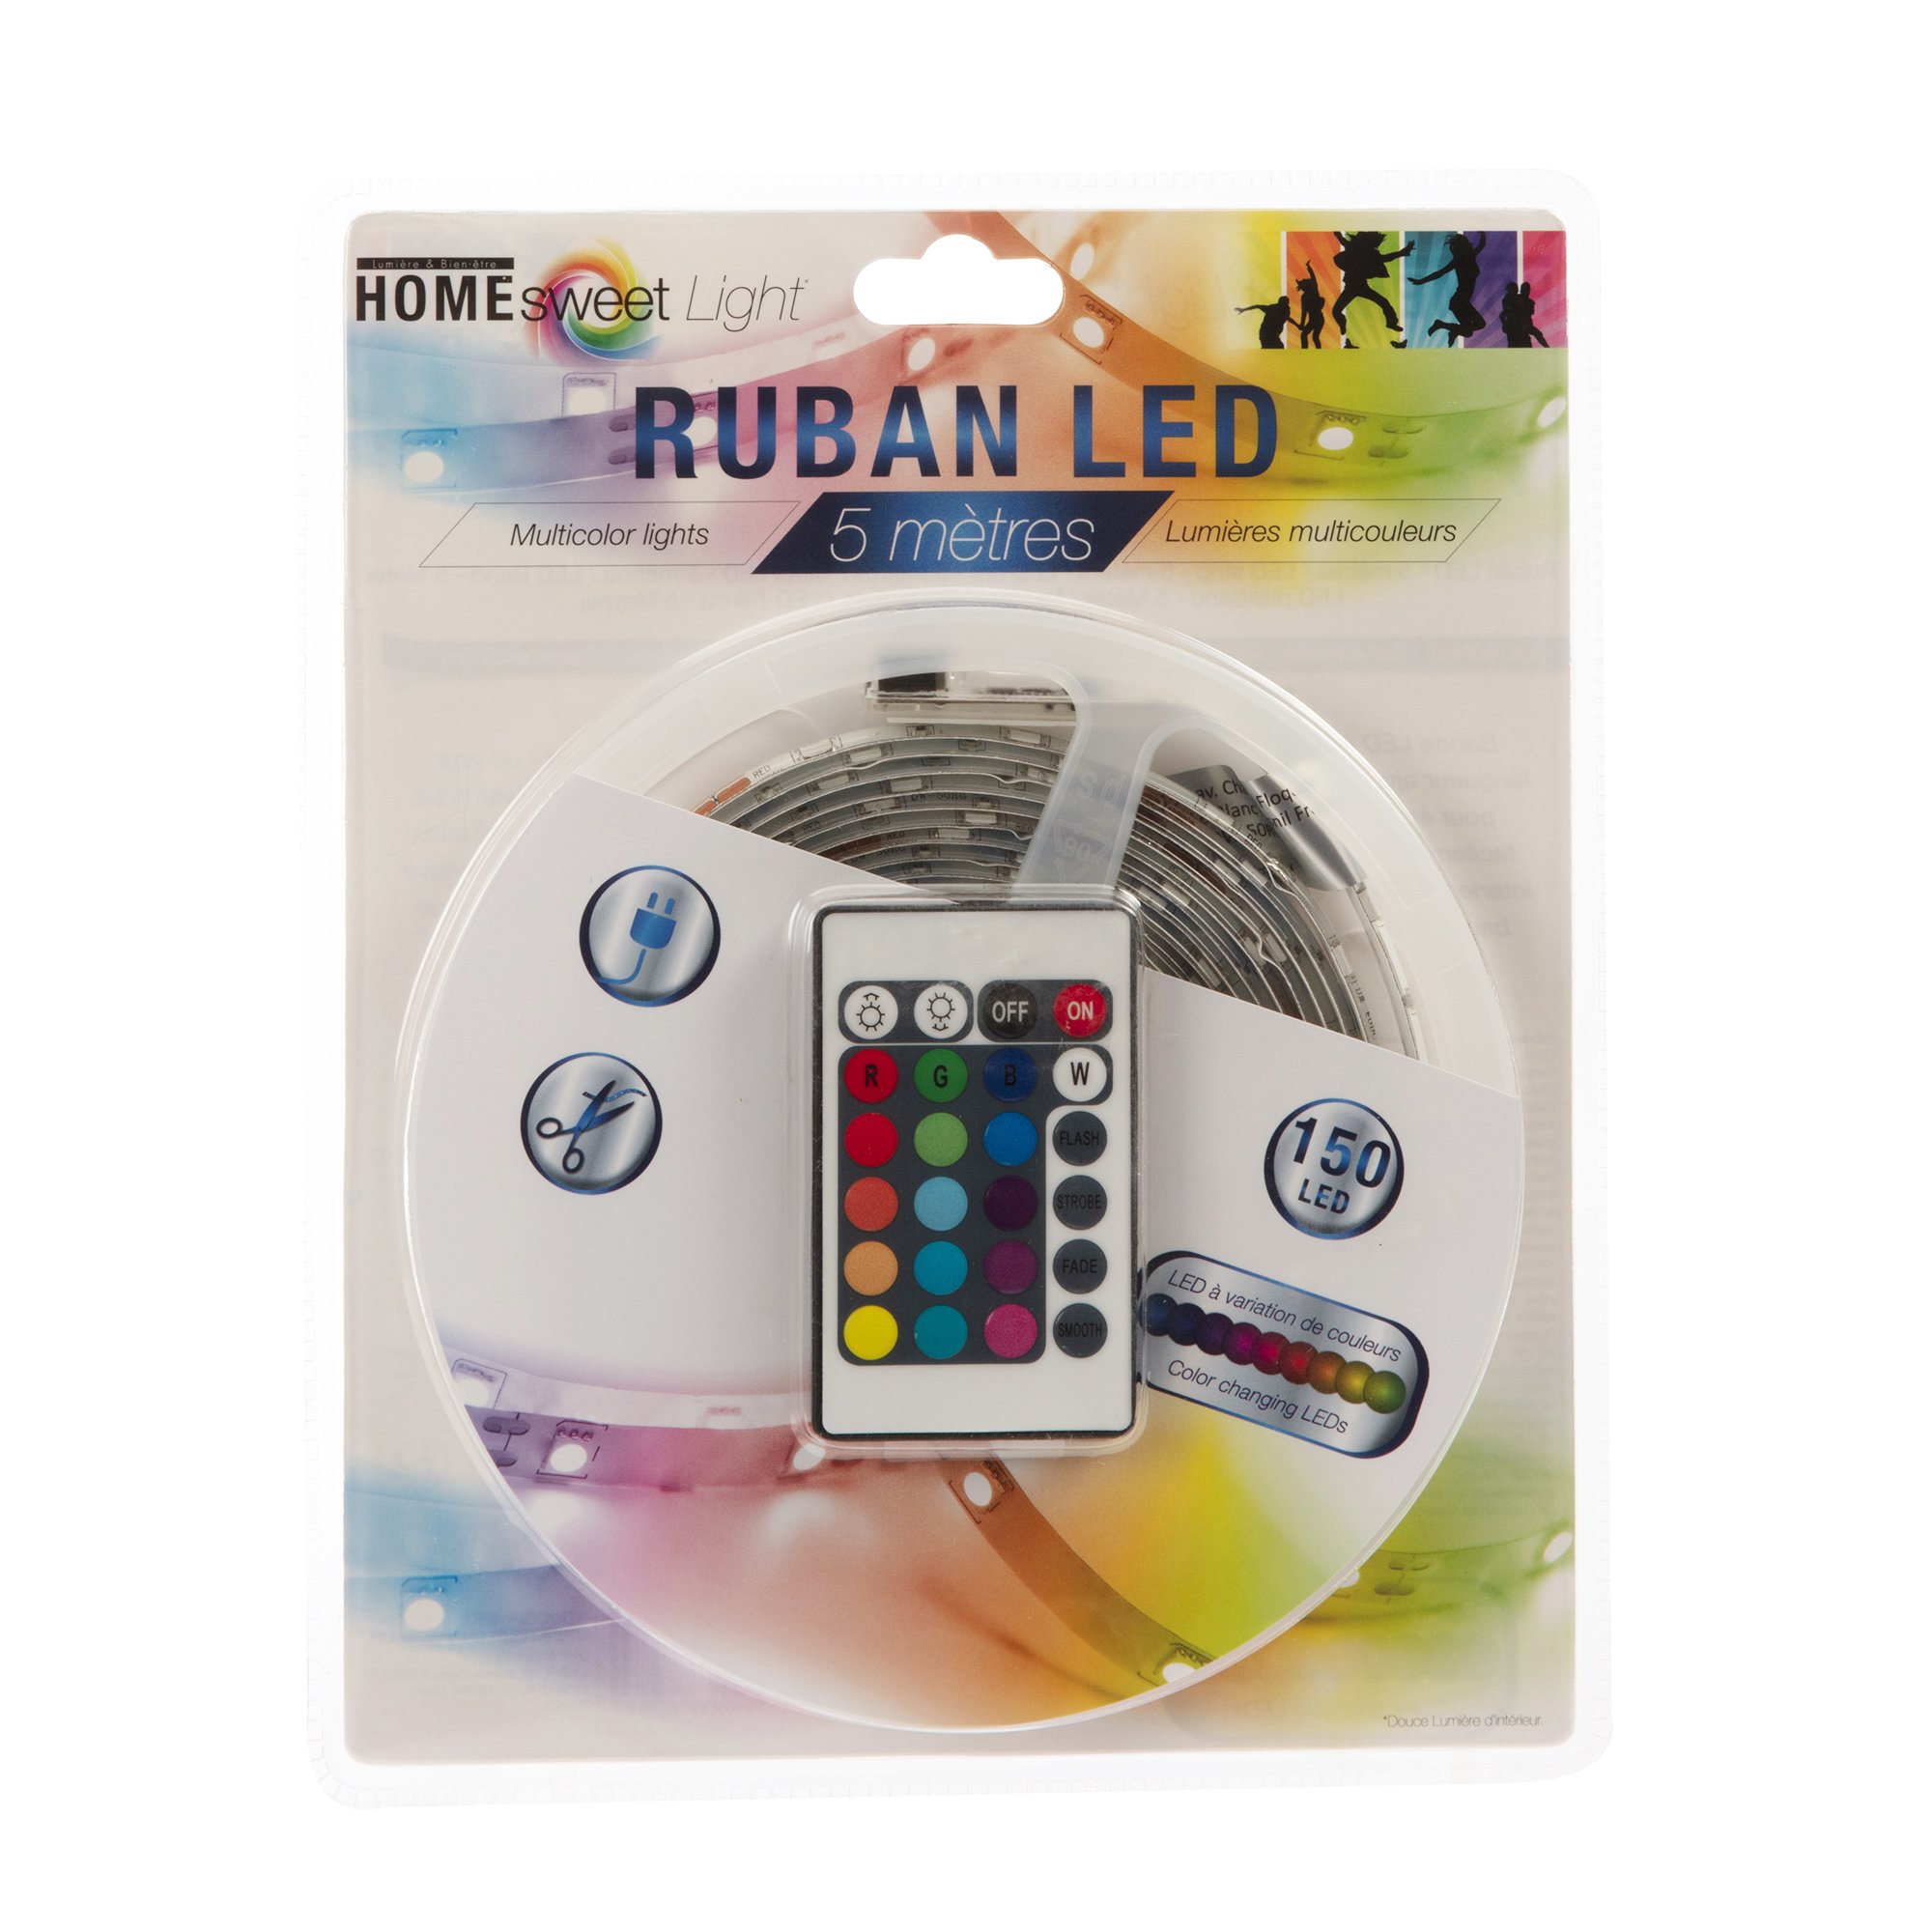 Ruban LED 5M Multicolore + télécommande - Luminaire/Lampe fantaisie - FY  HOME